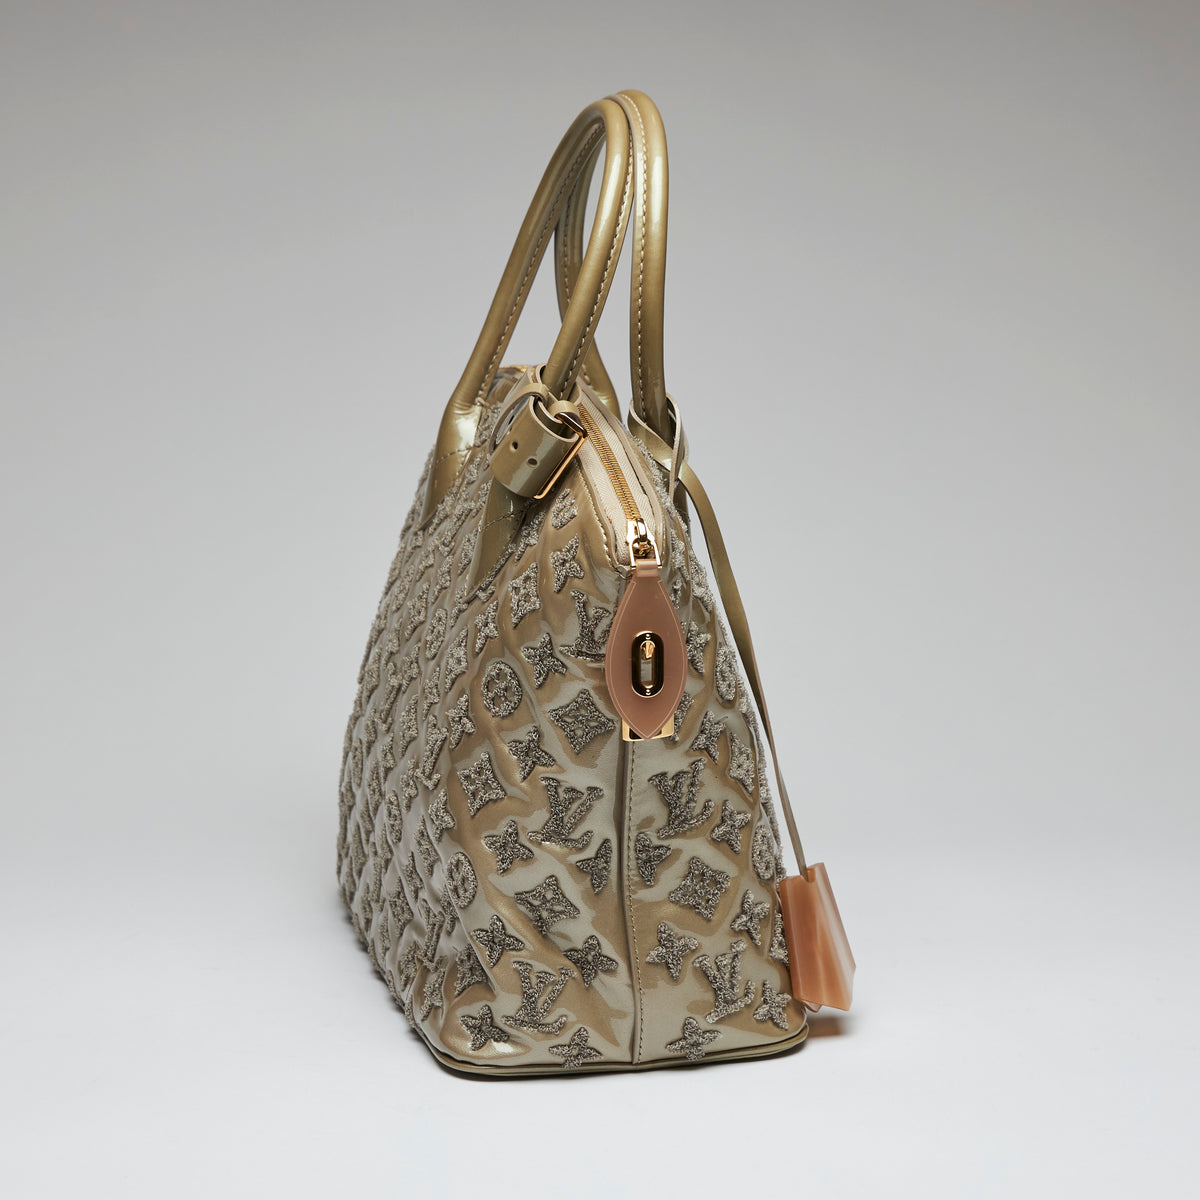 Louis Vuitton Fascination Lockit BB Bouclette Bag Handbag Black